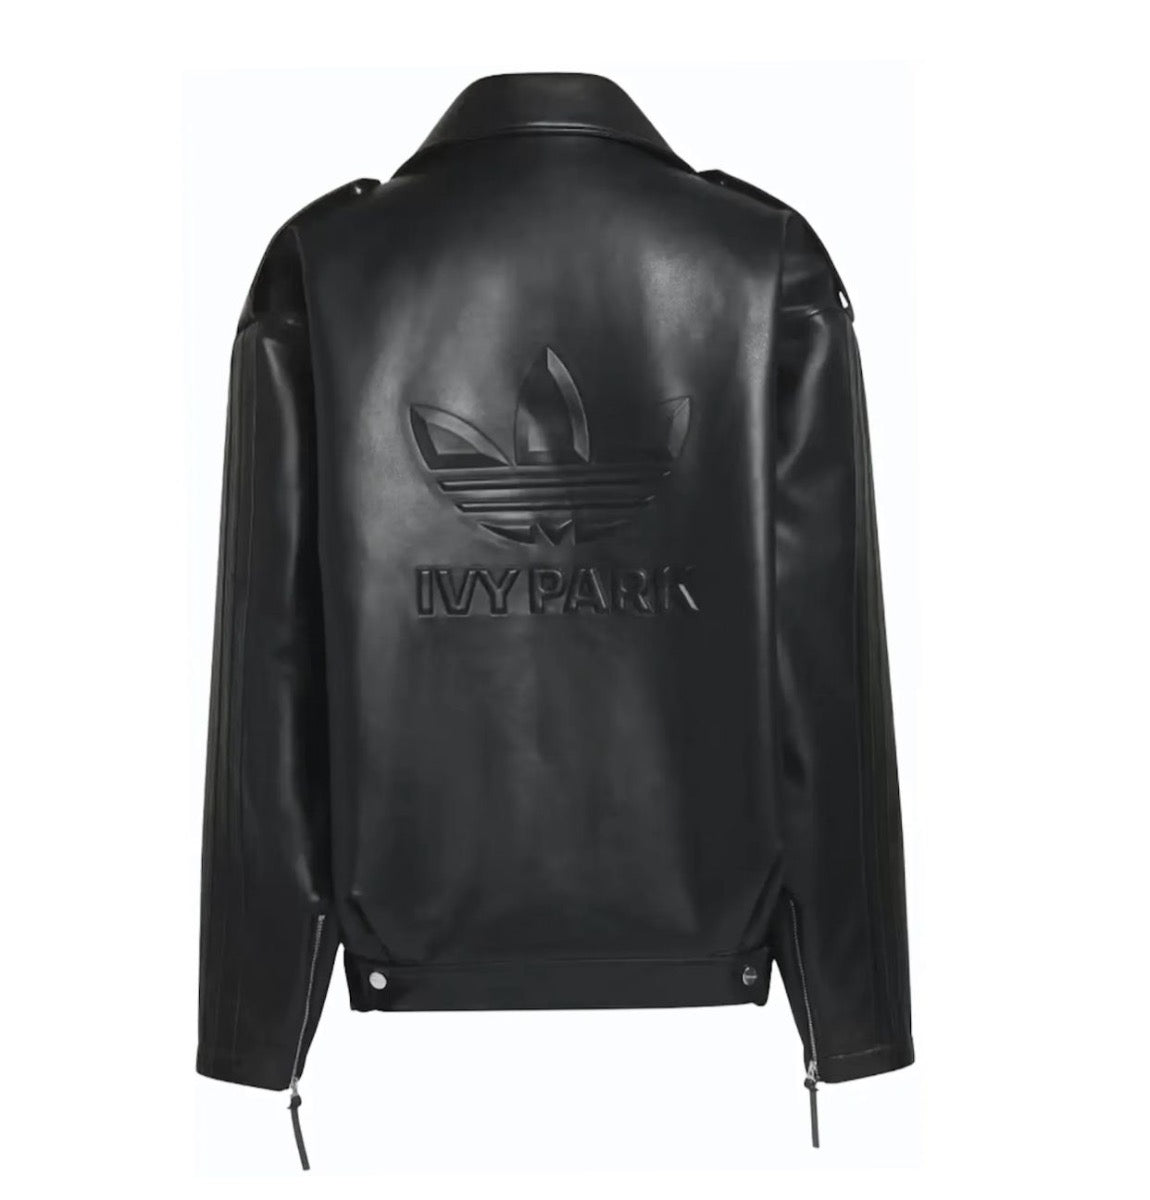 Adidas ivy park moto tour jacket black oversized